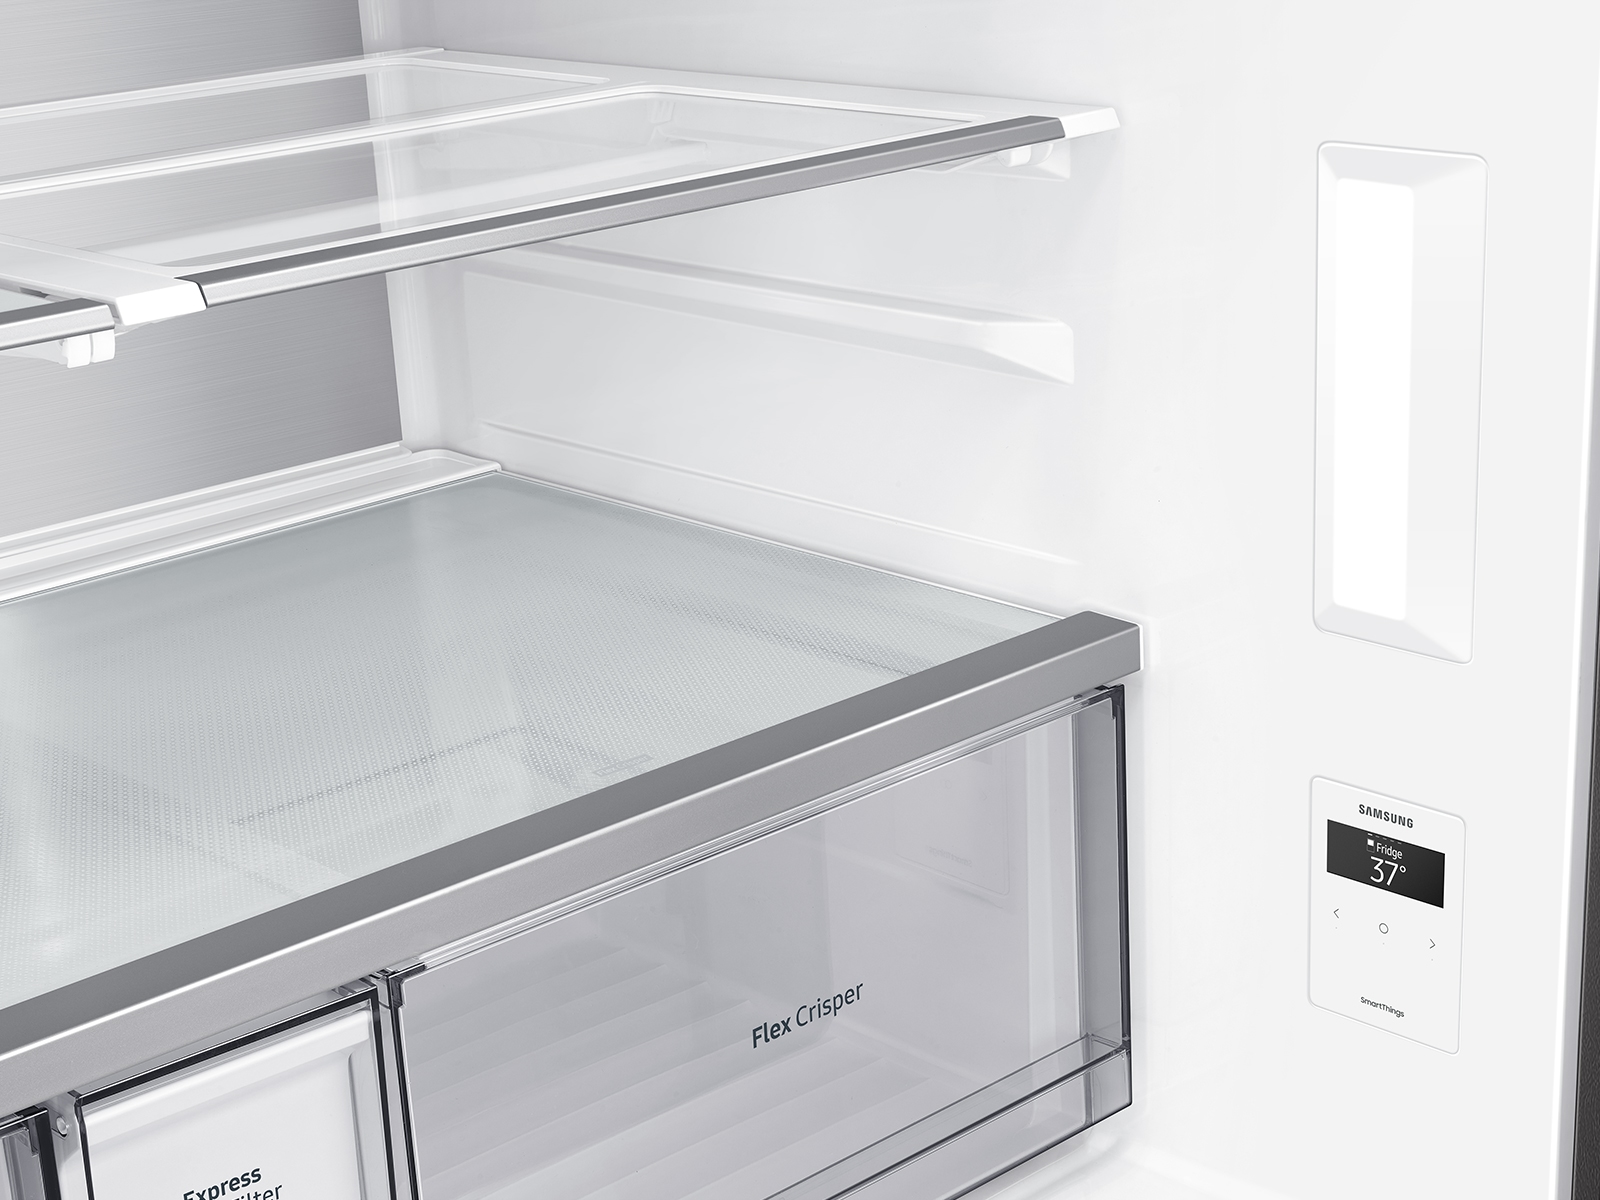 Samsung BESPOKE RF29A9675MT 36 Inch 4-Door Flex™ Smart Refrigerator with 29  cuft